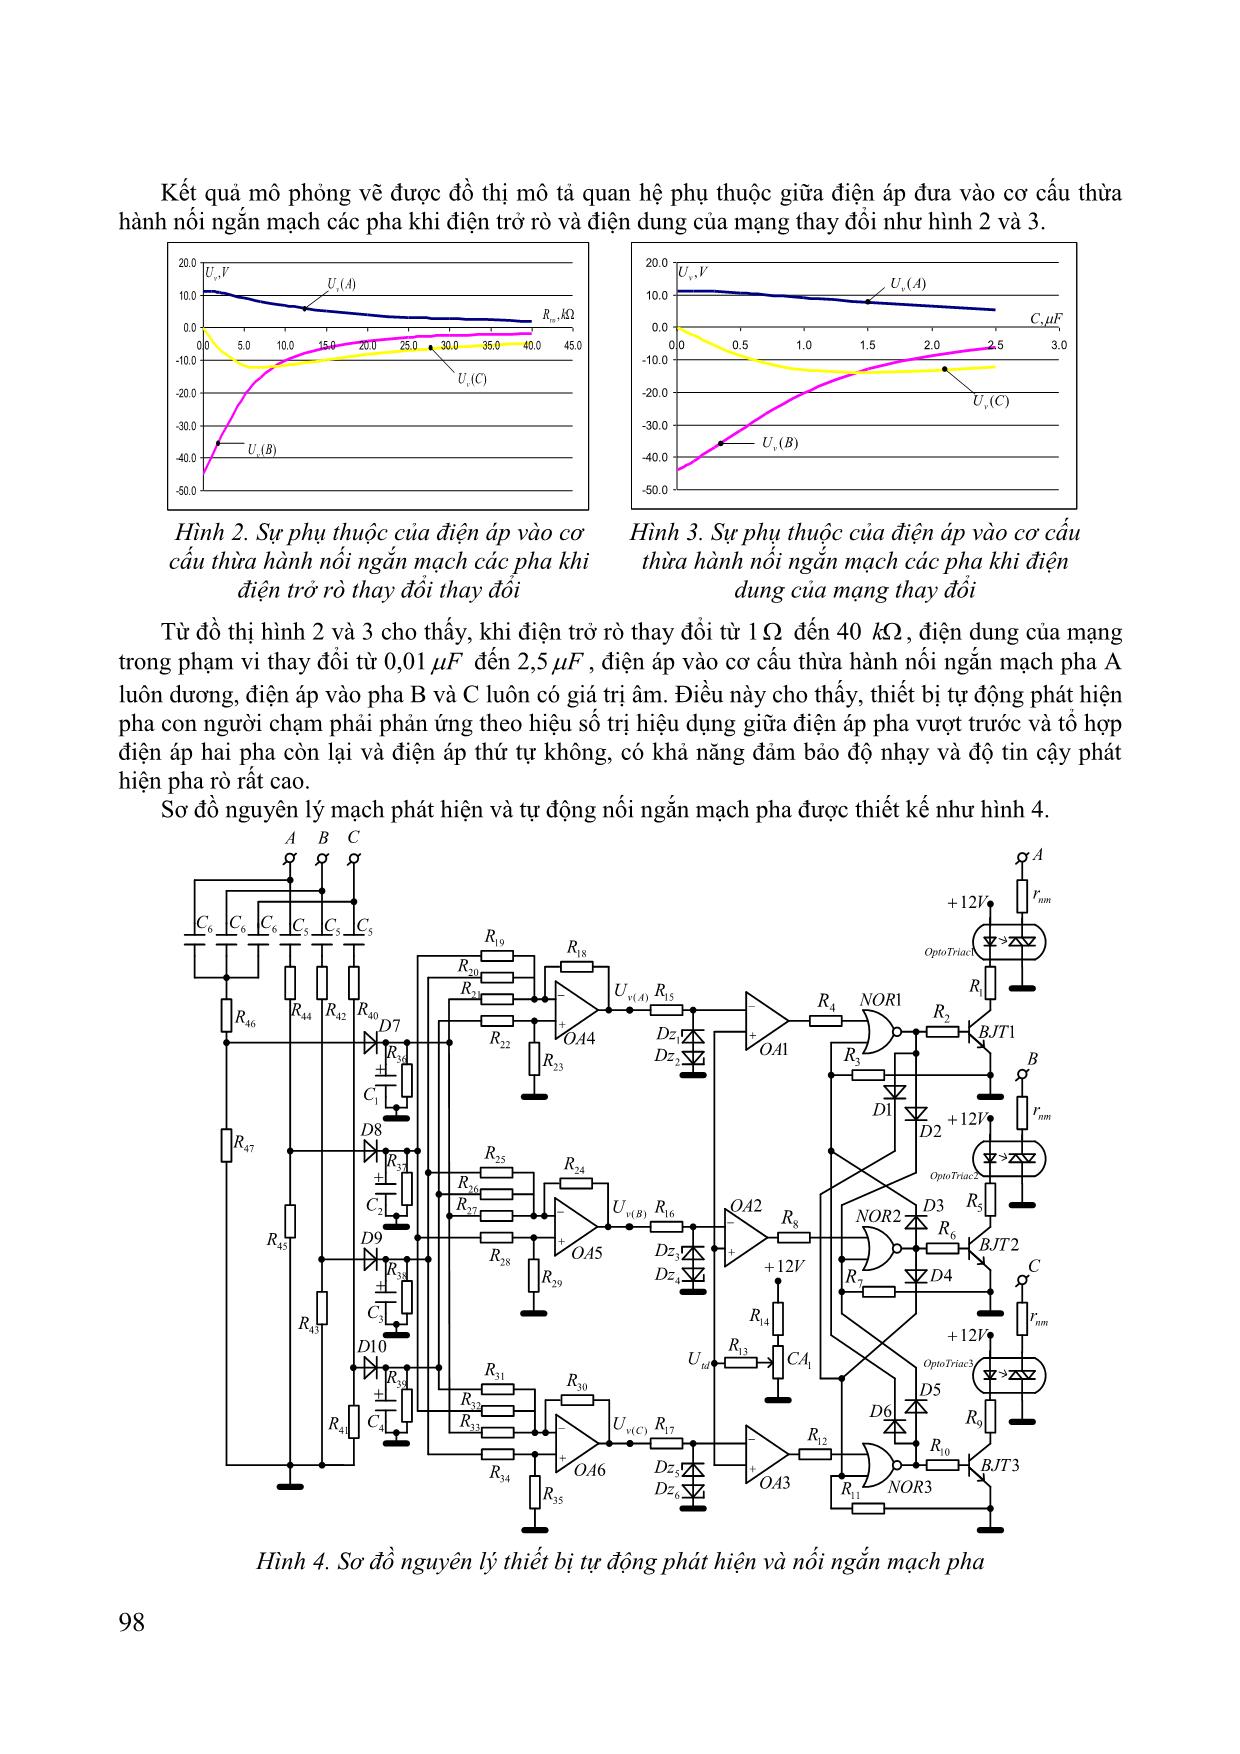 Mạch tự động phát hiện và nối ngắn mạch pha rò dùng cho mạng điện mỏ hầm lò điện áp 1140V trang 3